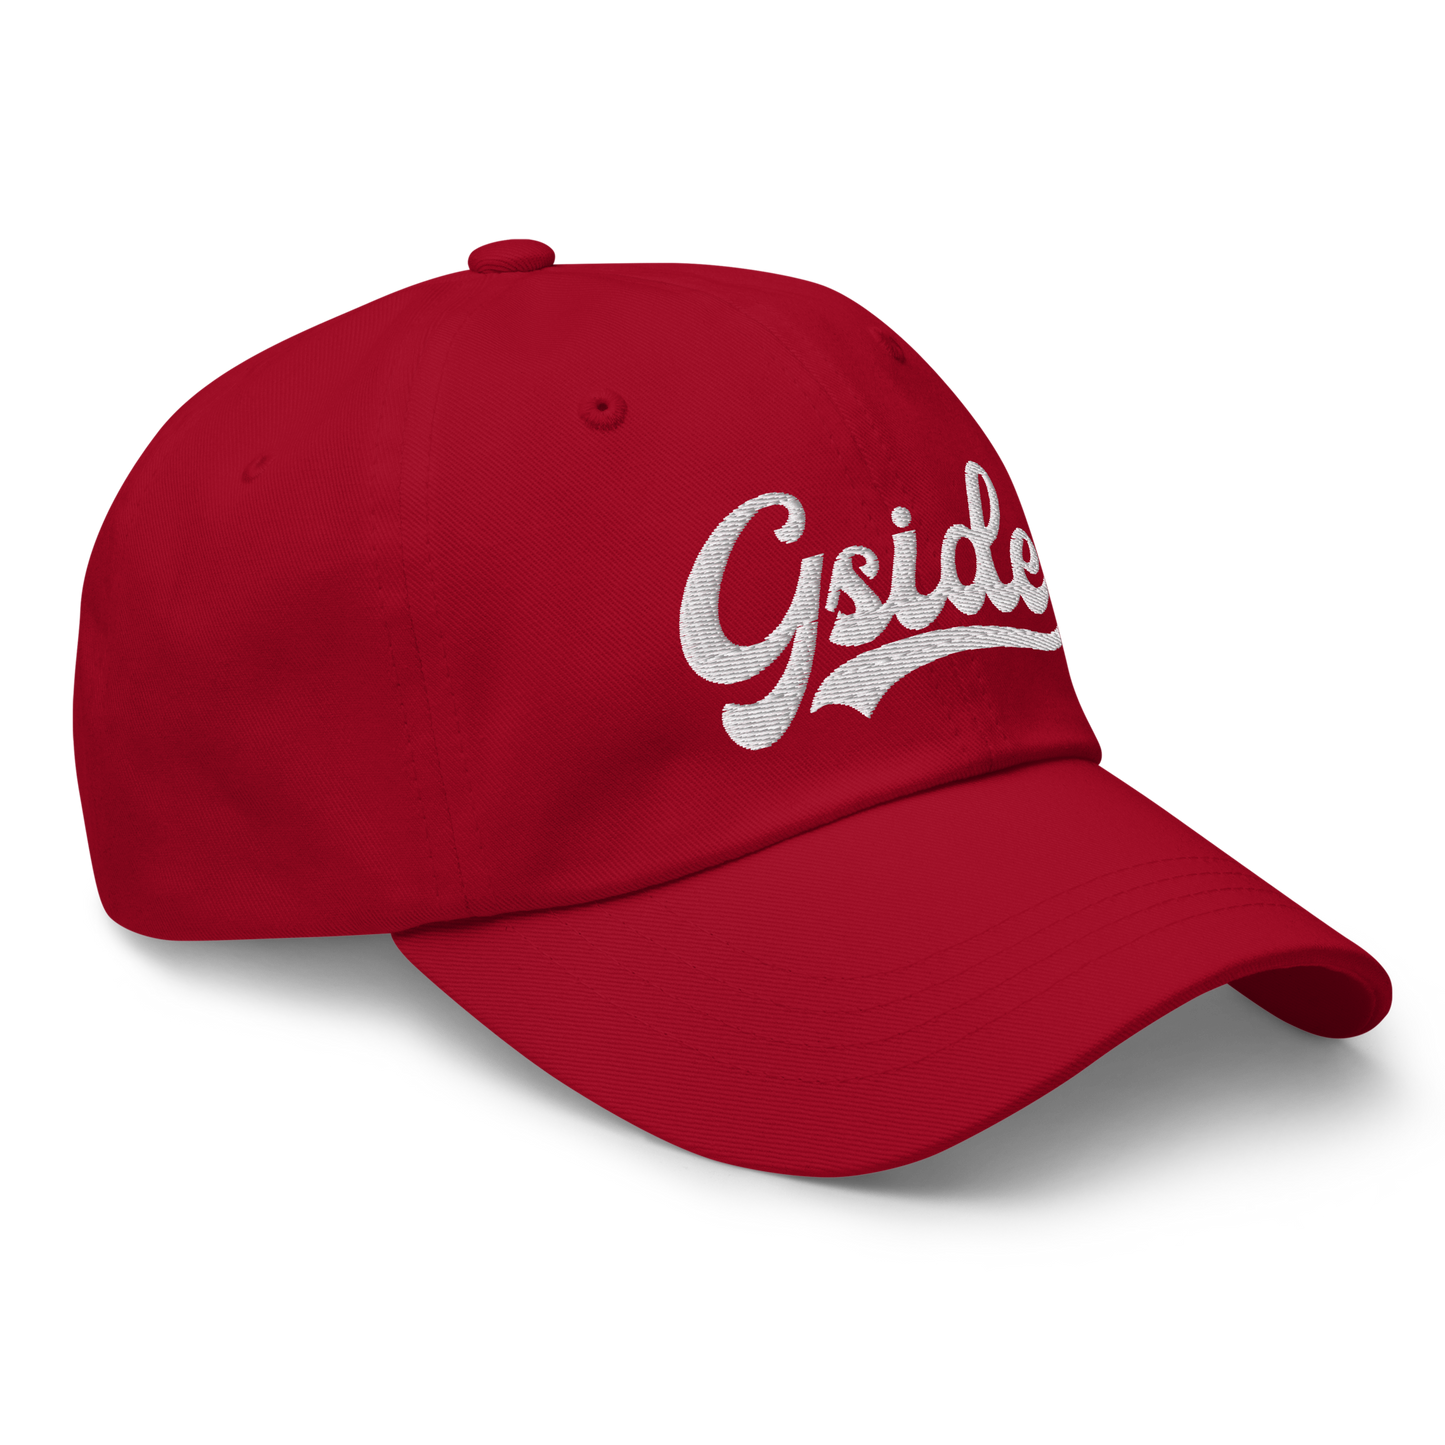 Gside Cap - Red/White